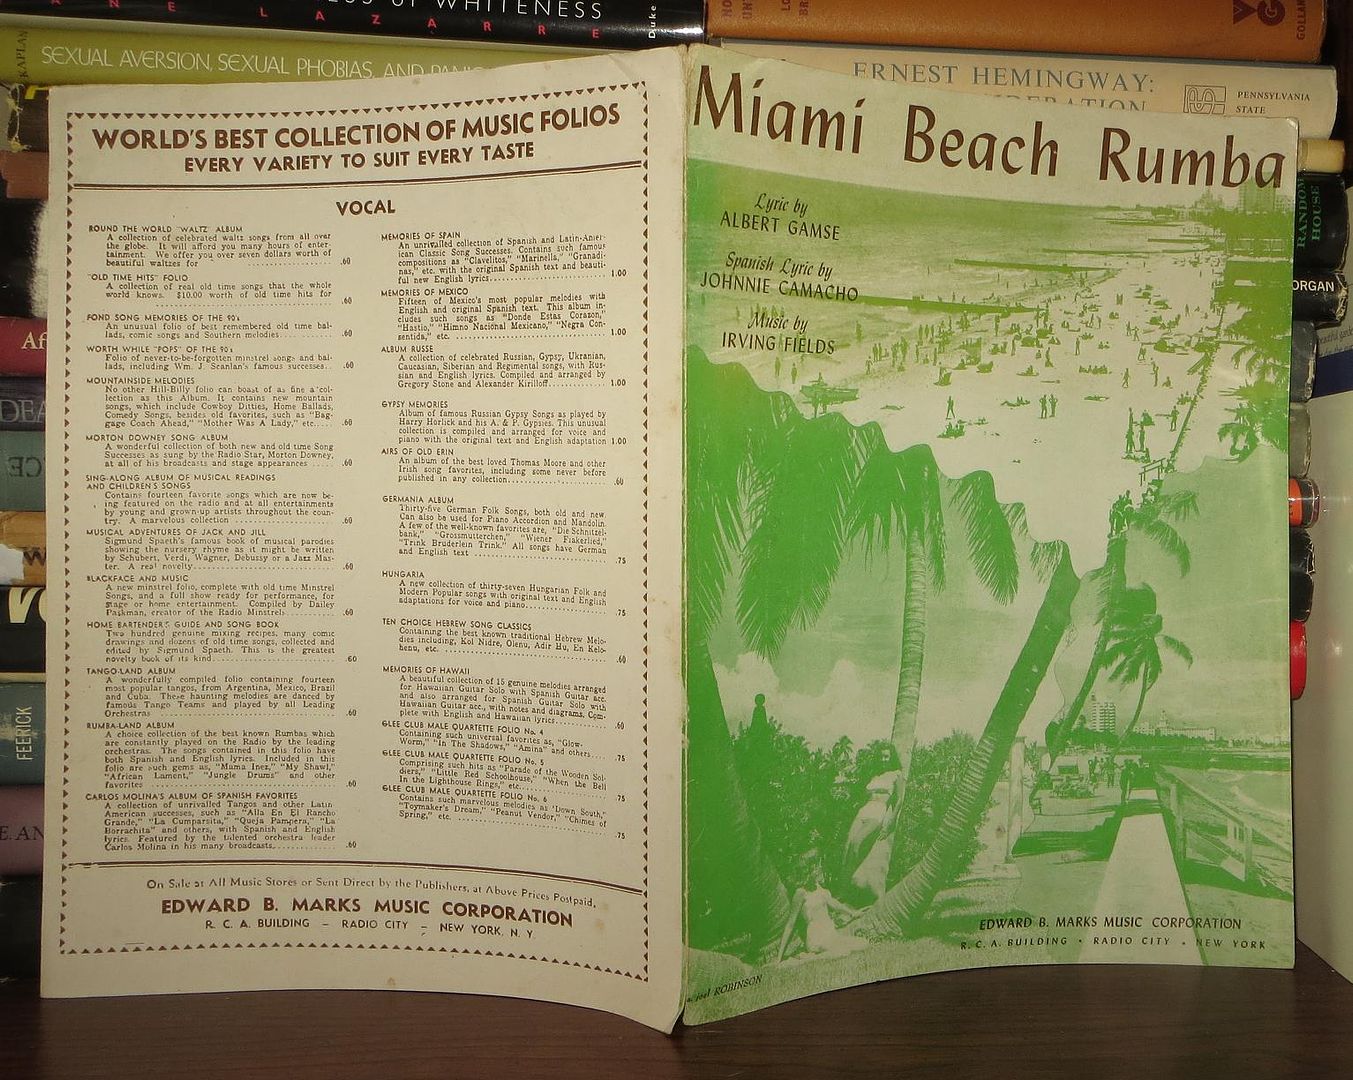 FIELDS, IRVING - Miami Beach Rumba